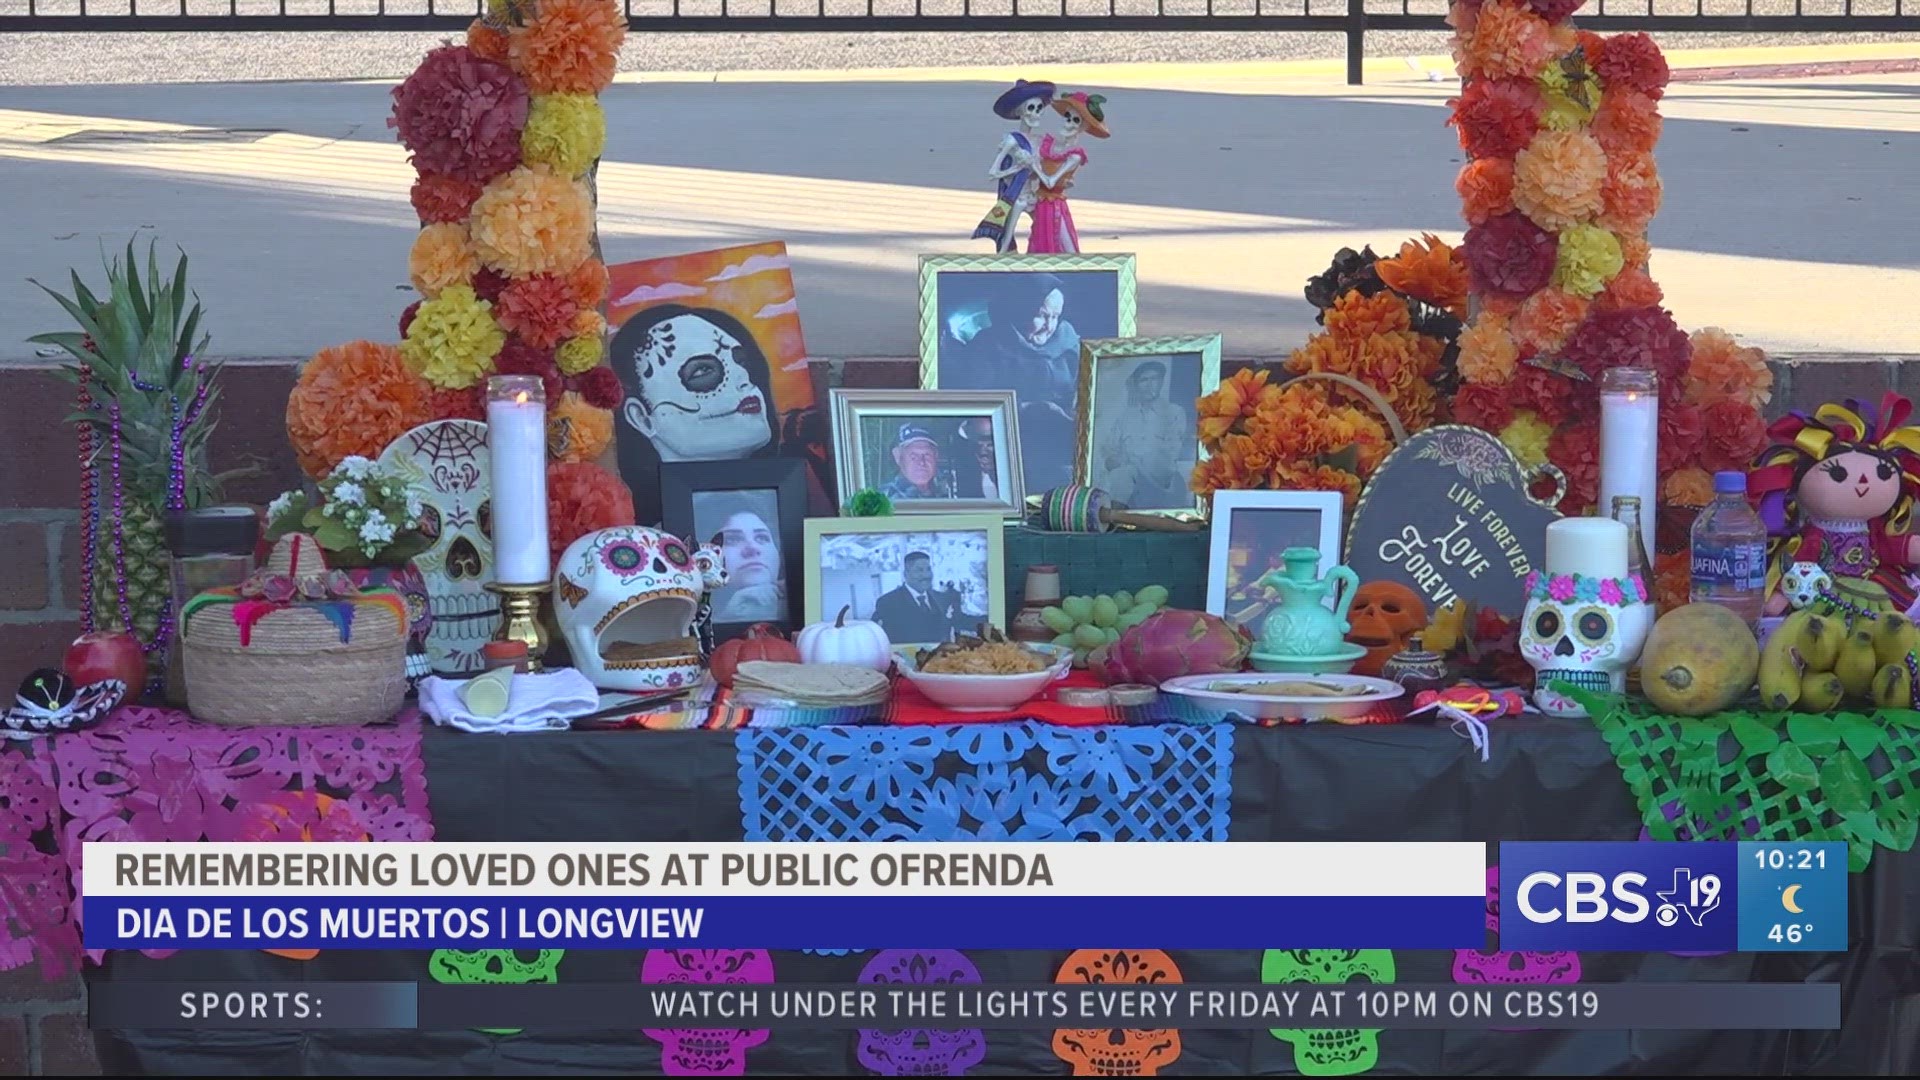 Día de los Muertos ofrenda honors loved ones in Longview